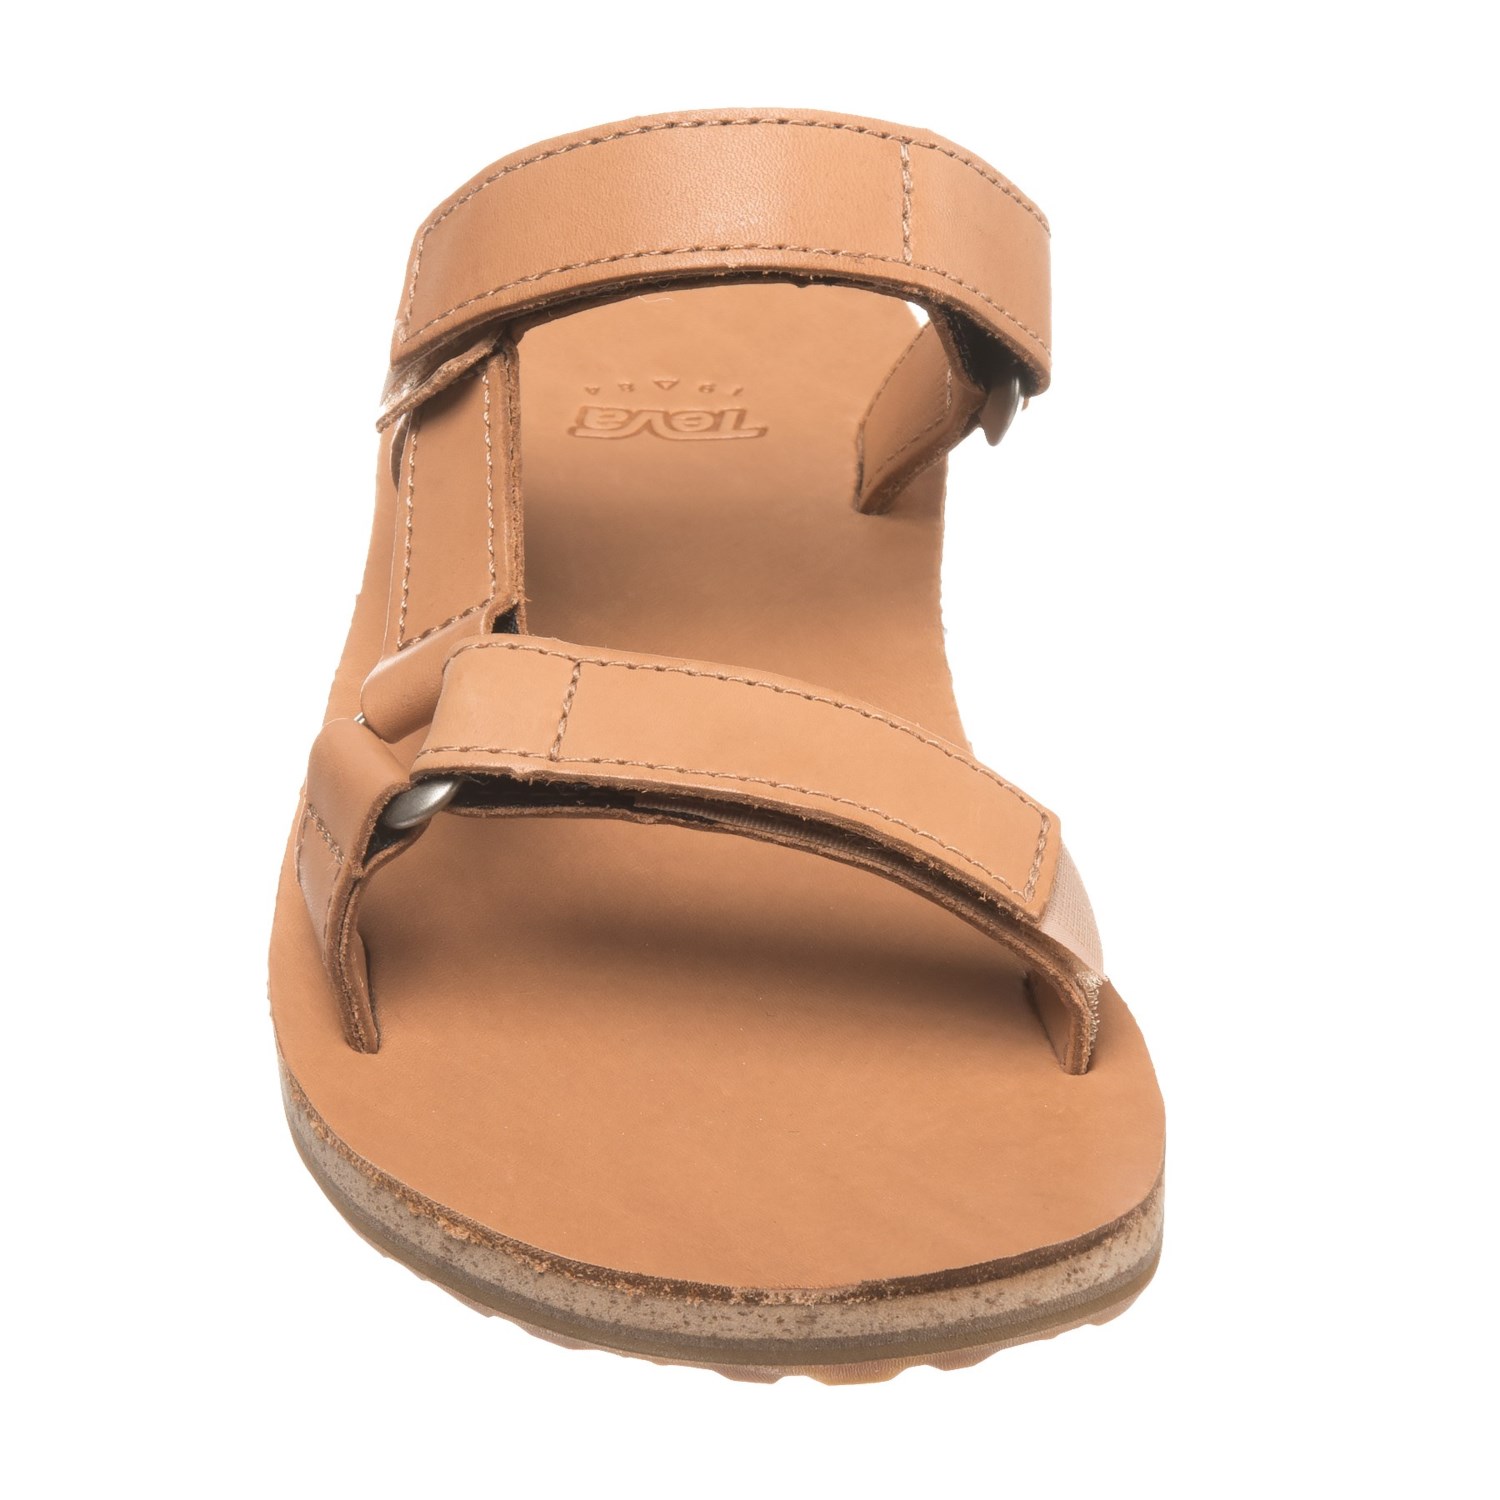 Teva Universal Slide Sandals (For Women) - Save 56%